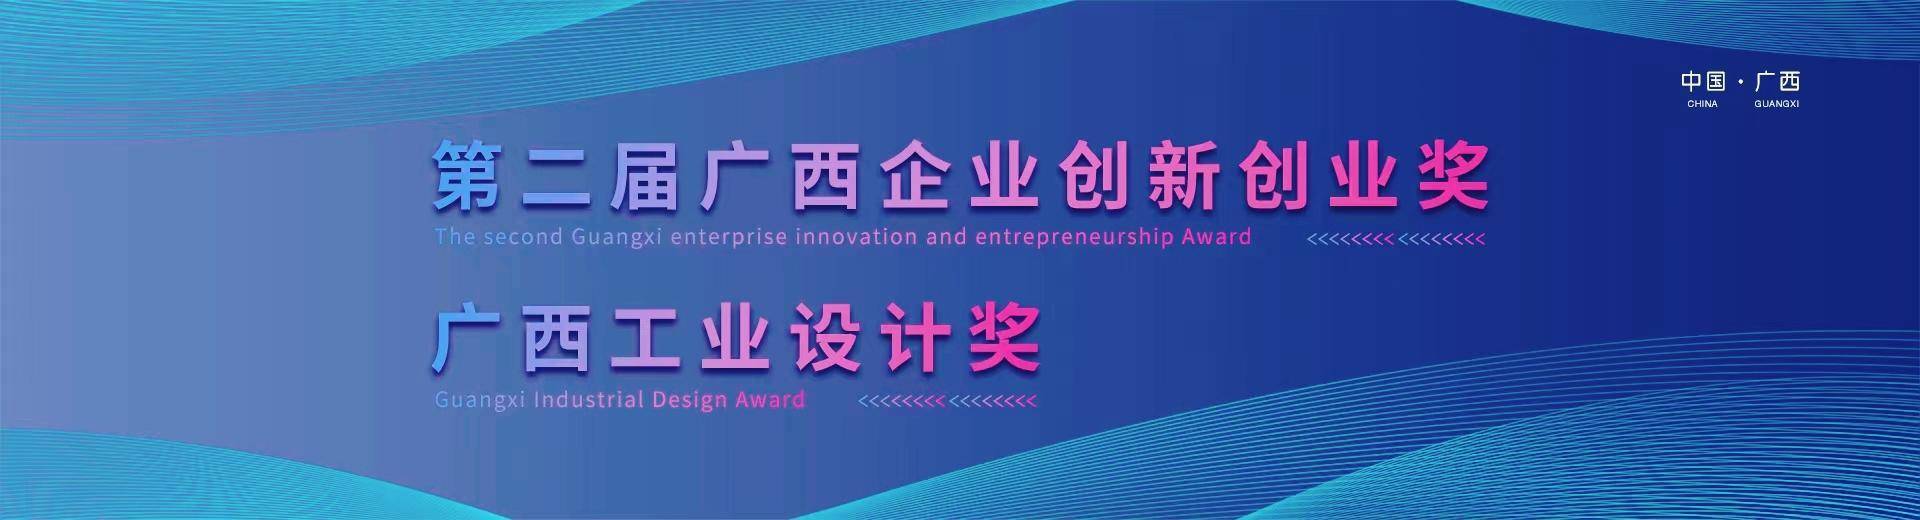 420万元奖金！第二届广西企业创新创业奖广西工业设计奖报名啦 